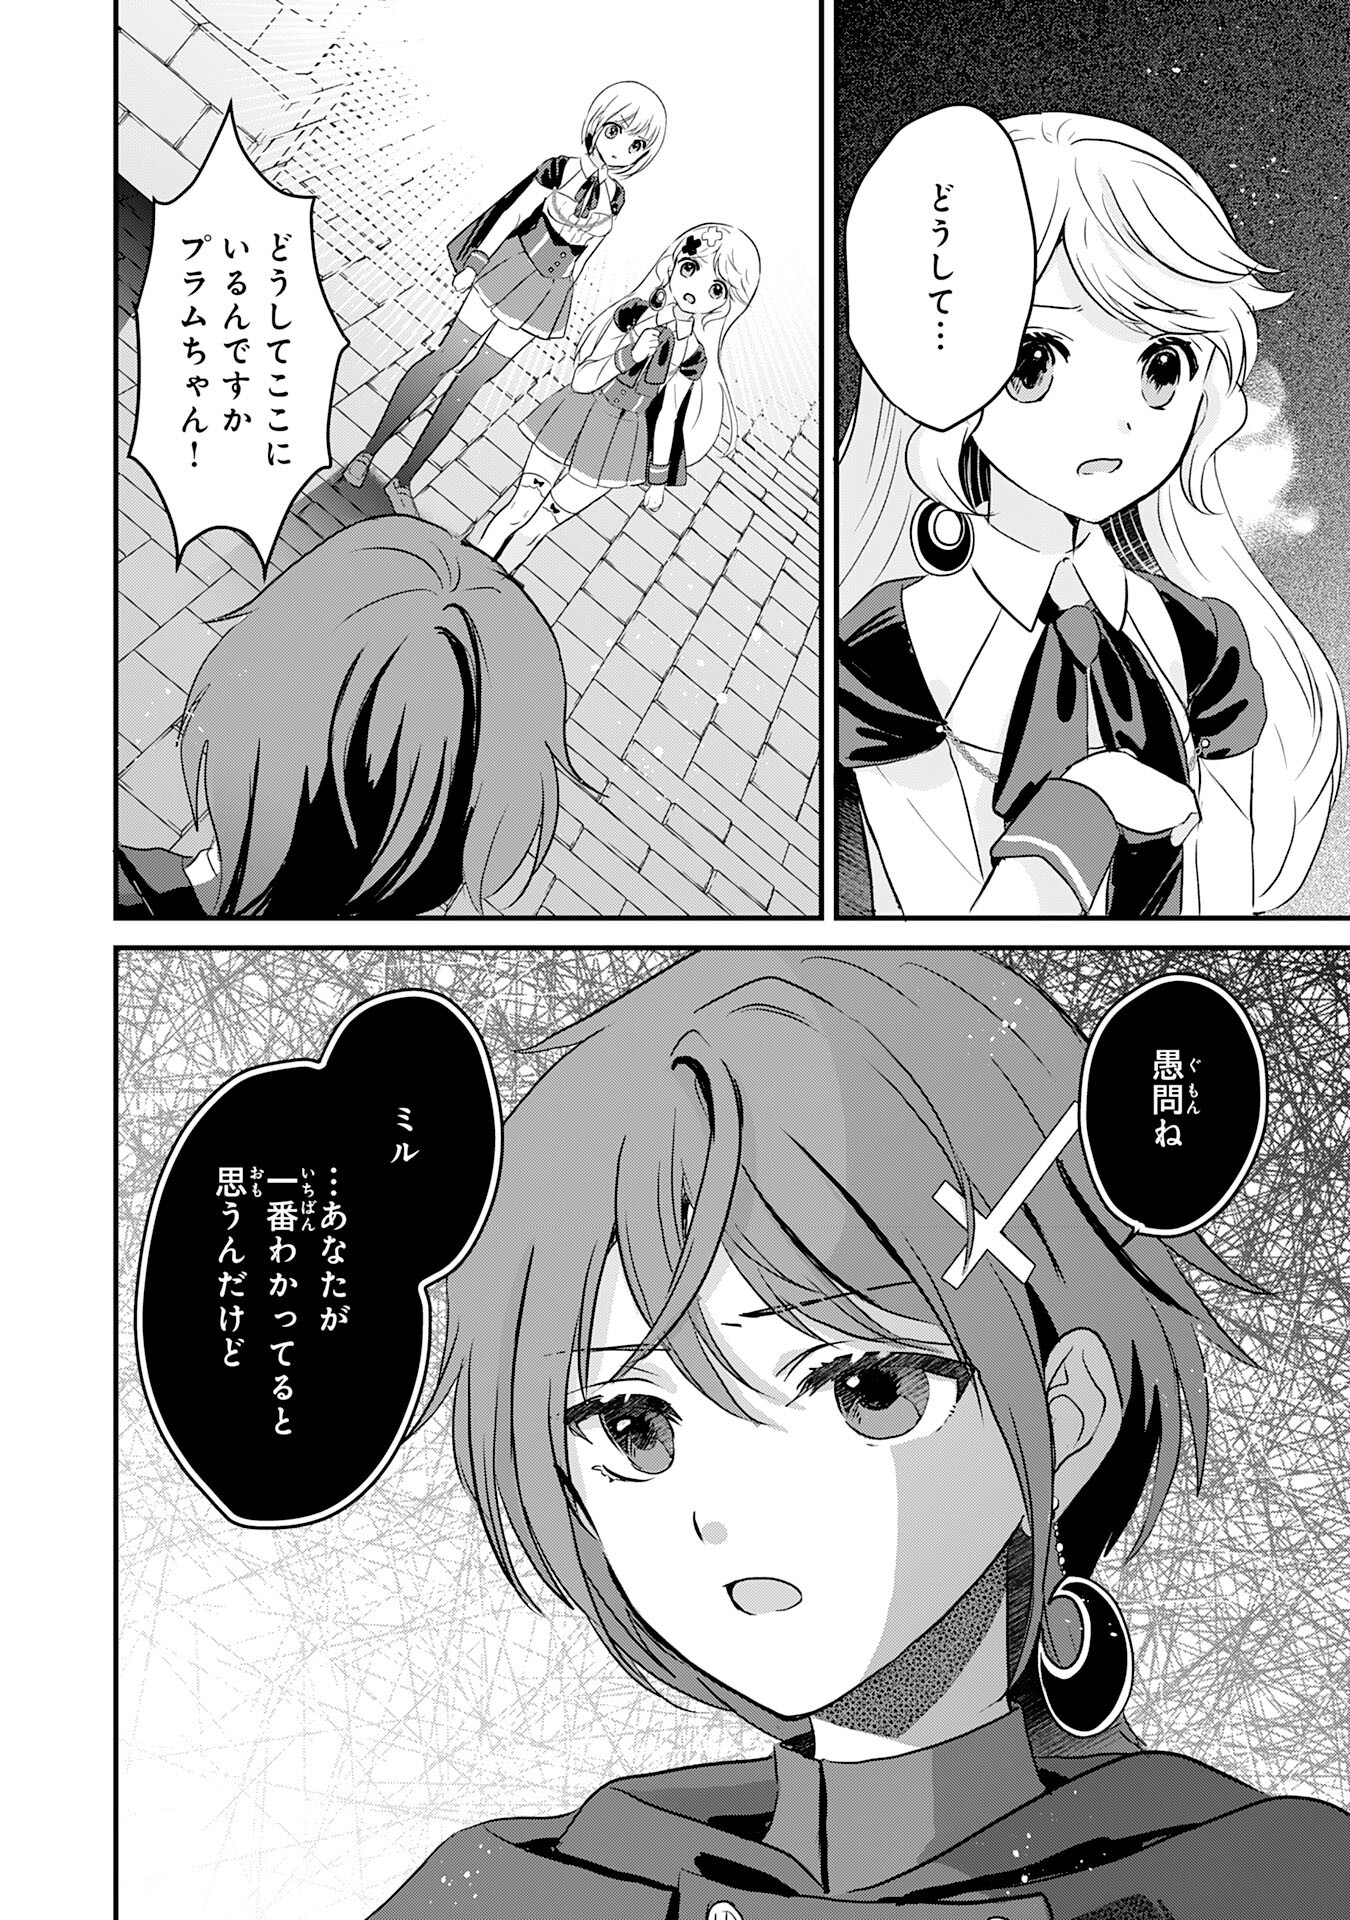 Kounchi 999 no Watashi, Sokushi Mahou ga Zettai ni Seikou suru no de Sekai Saikyou desu - Chapter 21 - Page 2